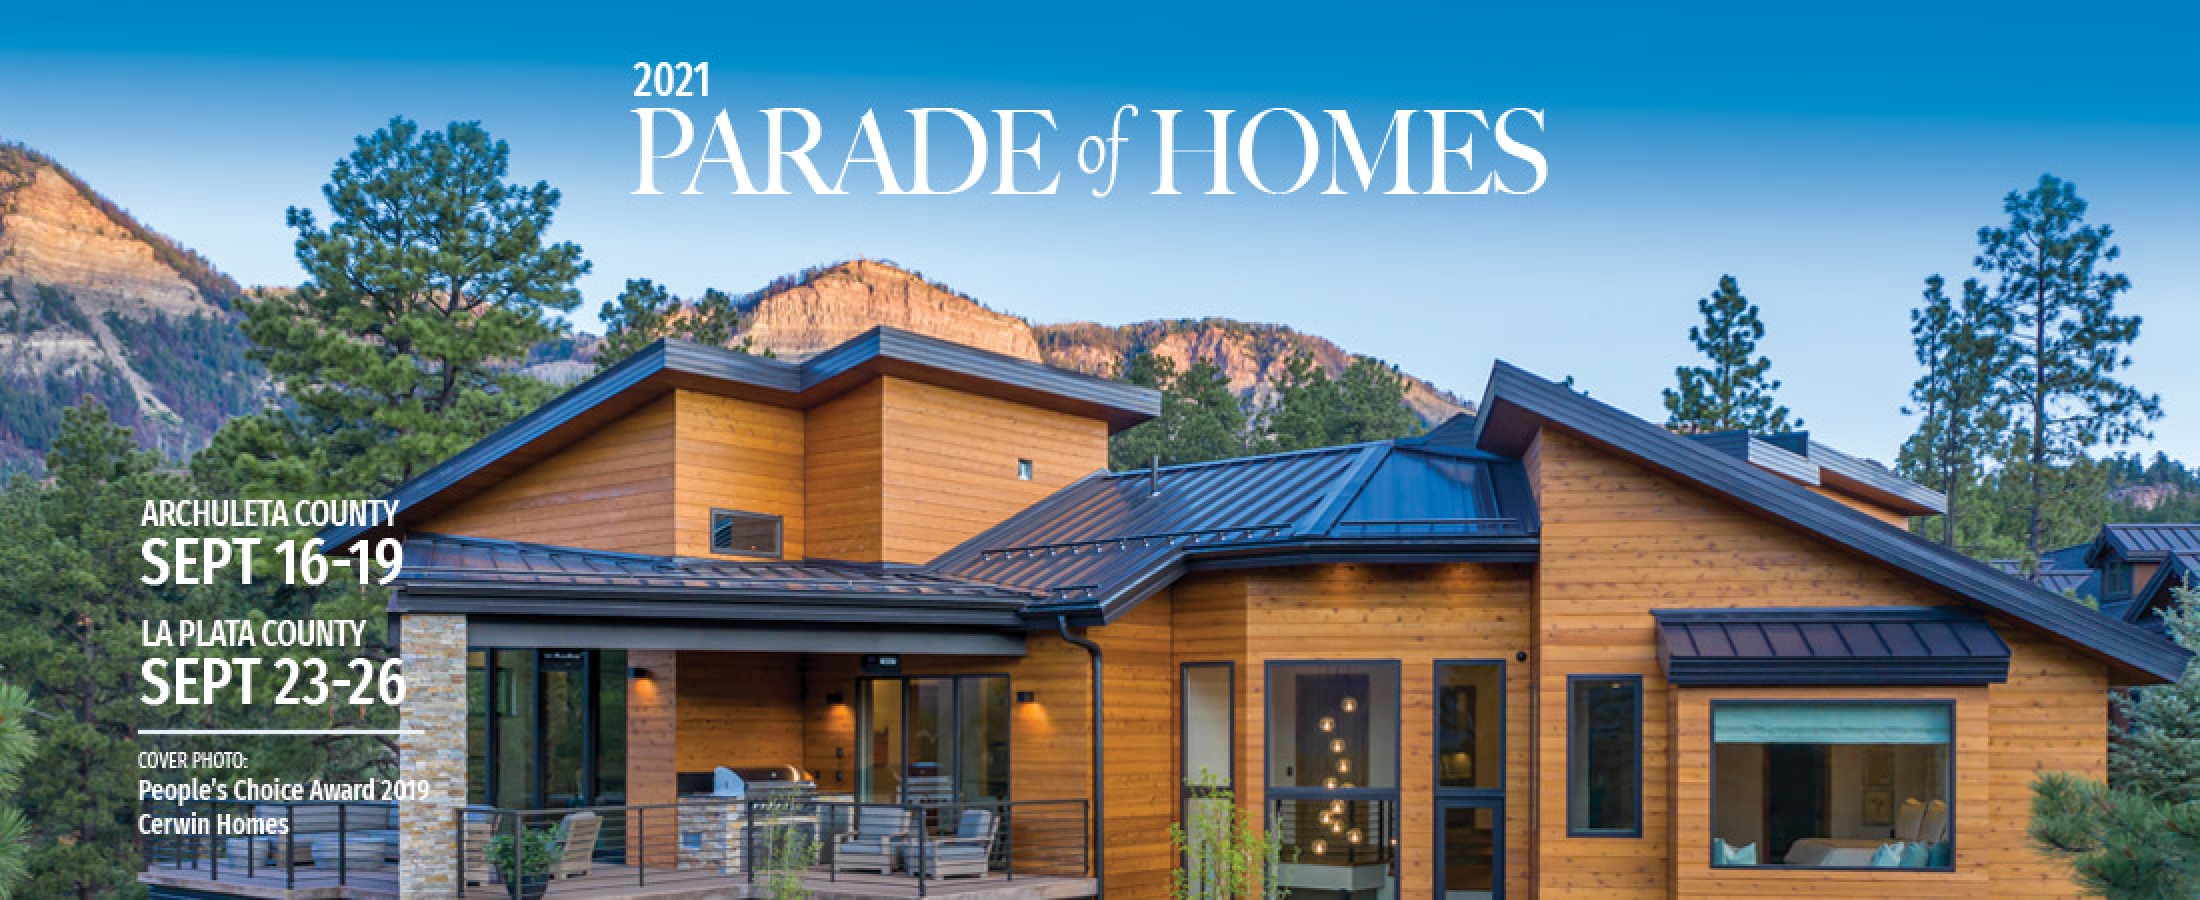 The 2021 Parade of Homes Home Builders Association of Southwest Colorado